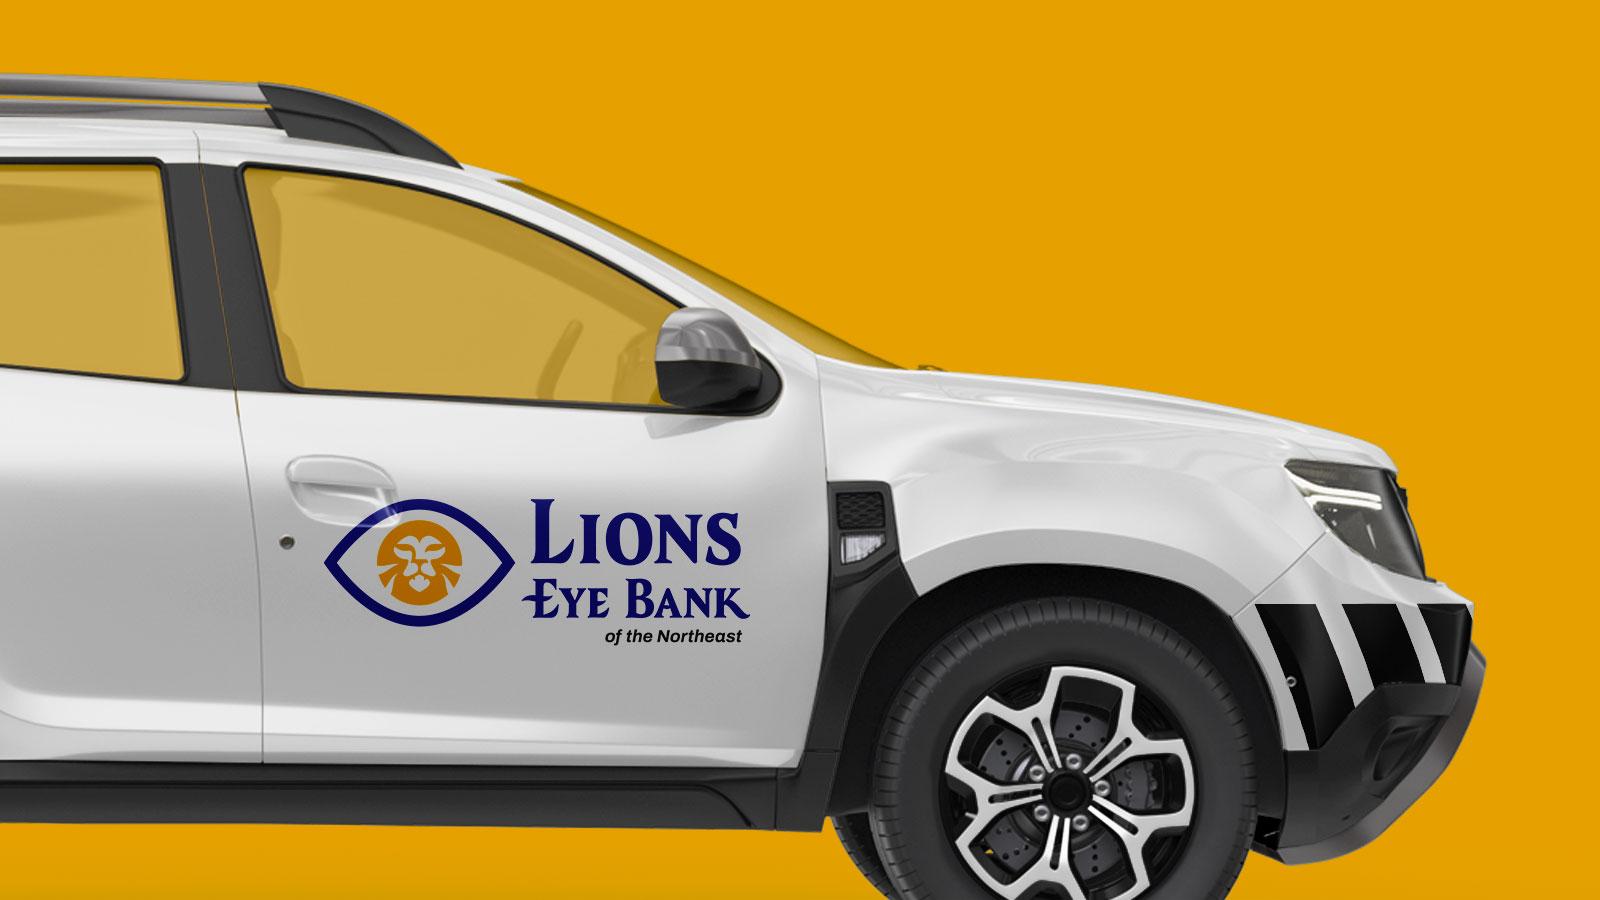 Lions Eye Bank of the Northeast | Logo on Vehicle